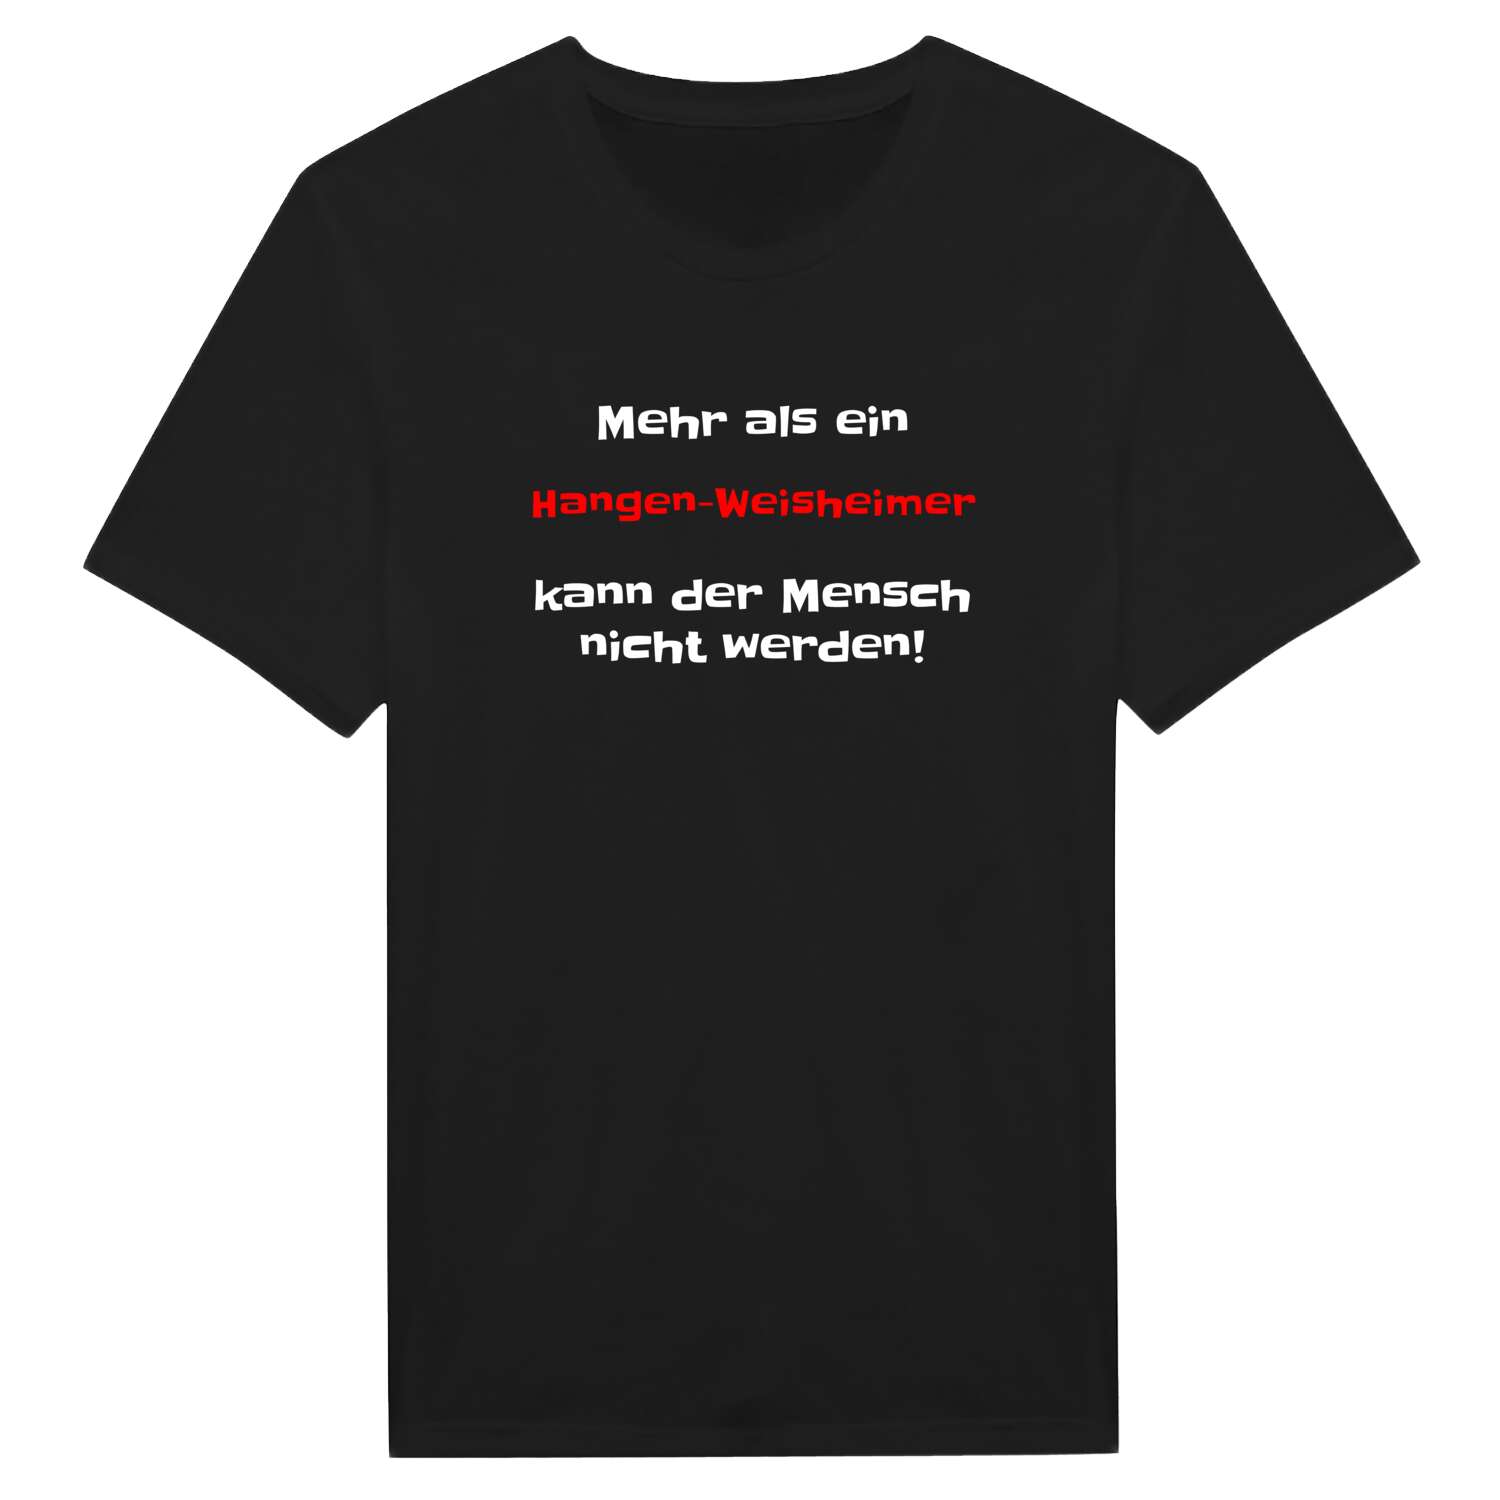 Hangen-Weisheim T-Shirt »Mehr als ein«